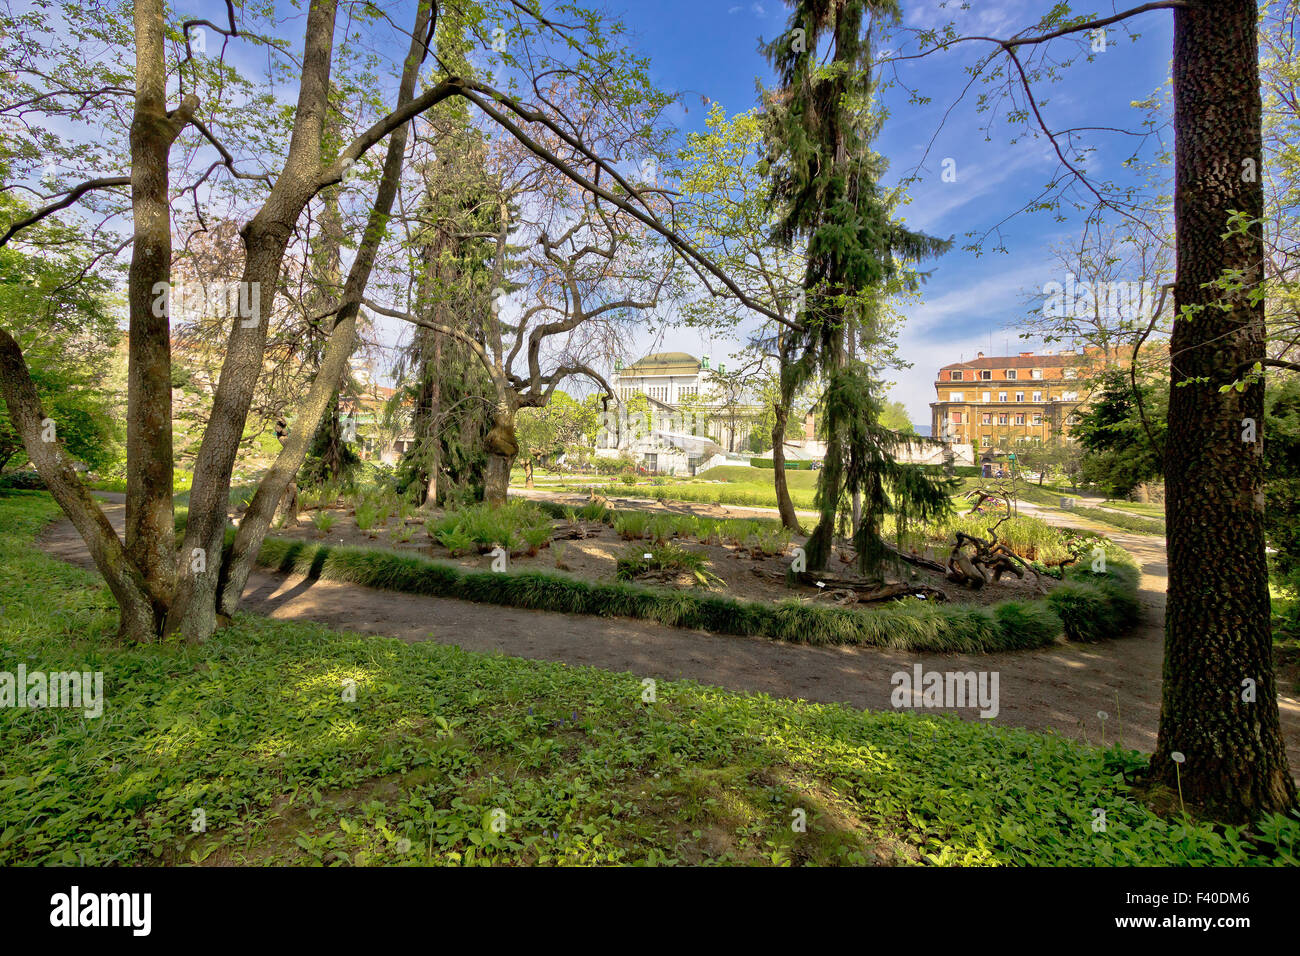 Botanical garden of Zagreb flora view Stock Photo